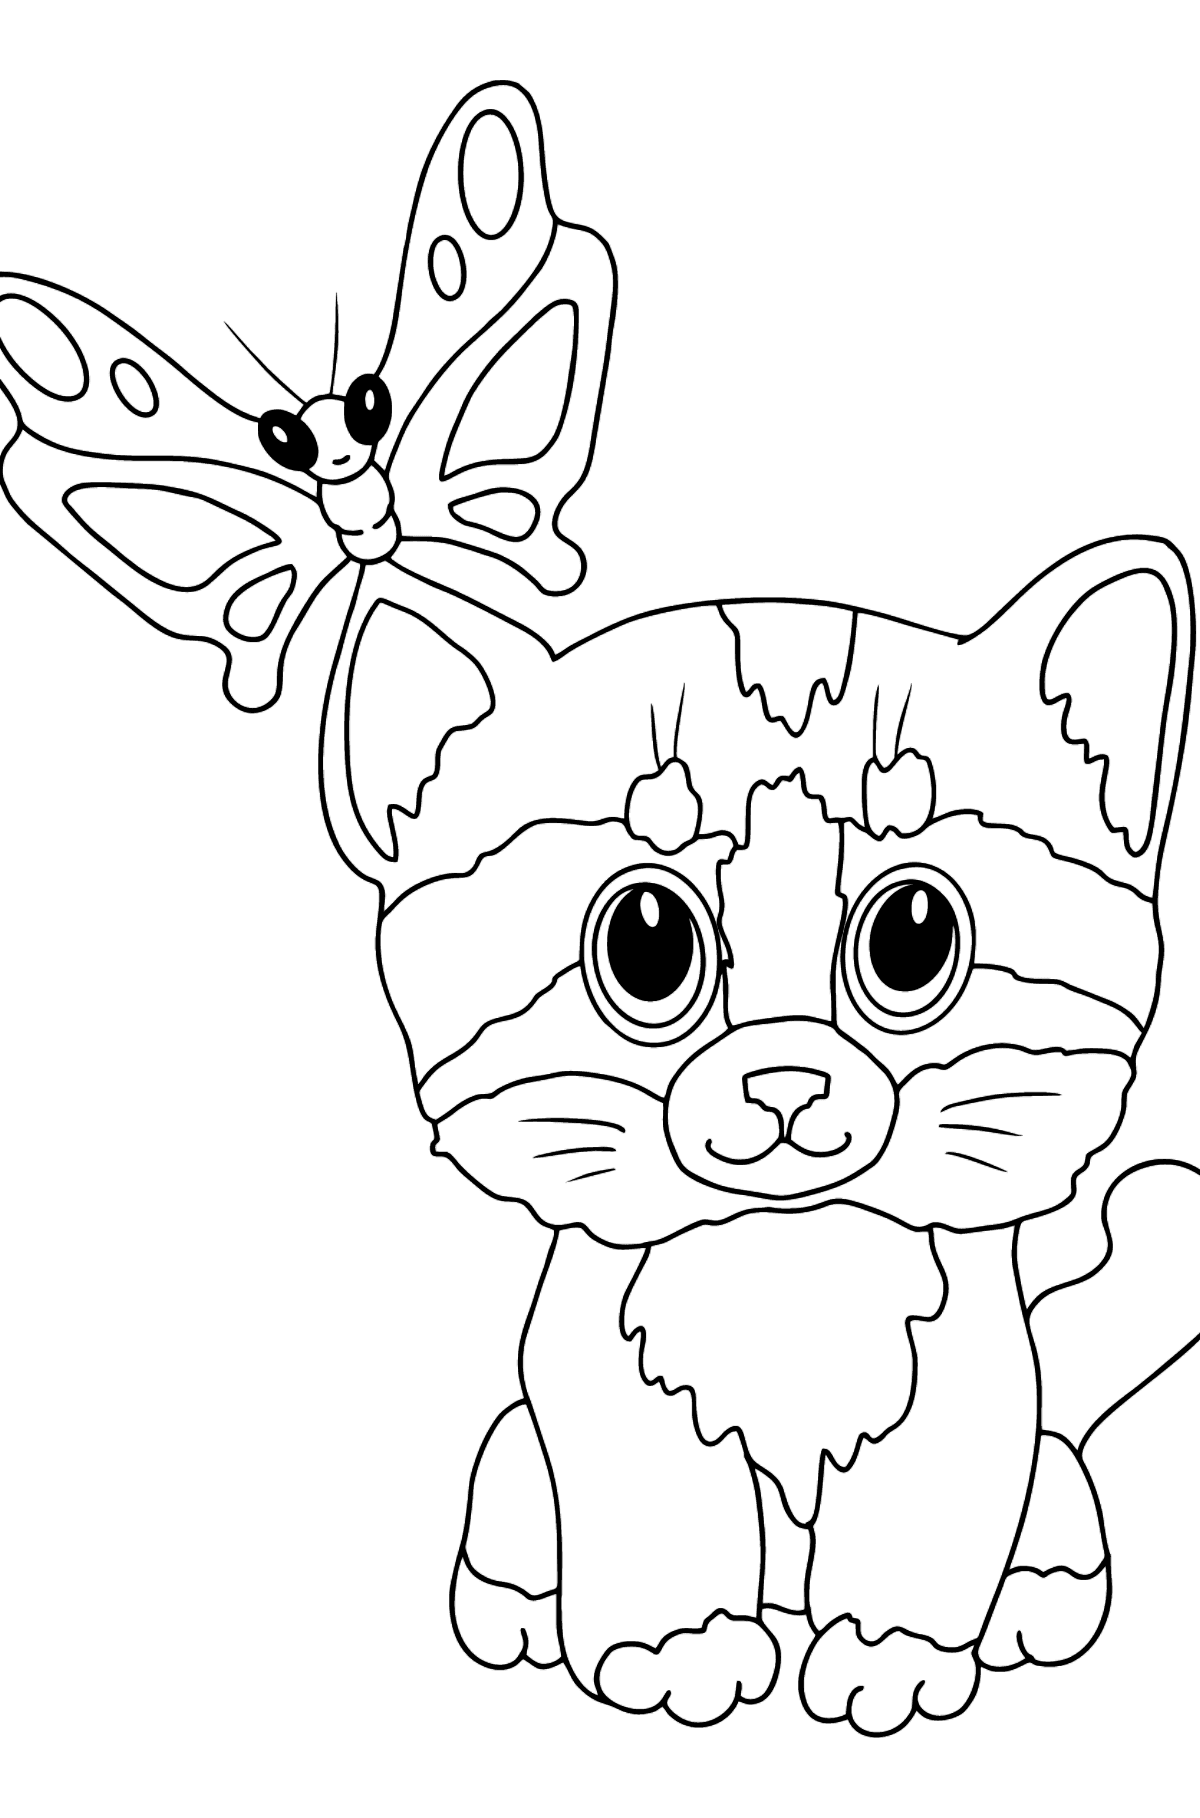 Dibujo de gatitos y mariposas para colorear - Dibujos para Colorear para Niños